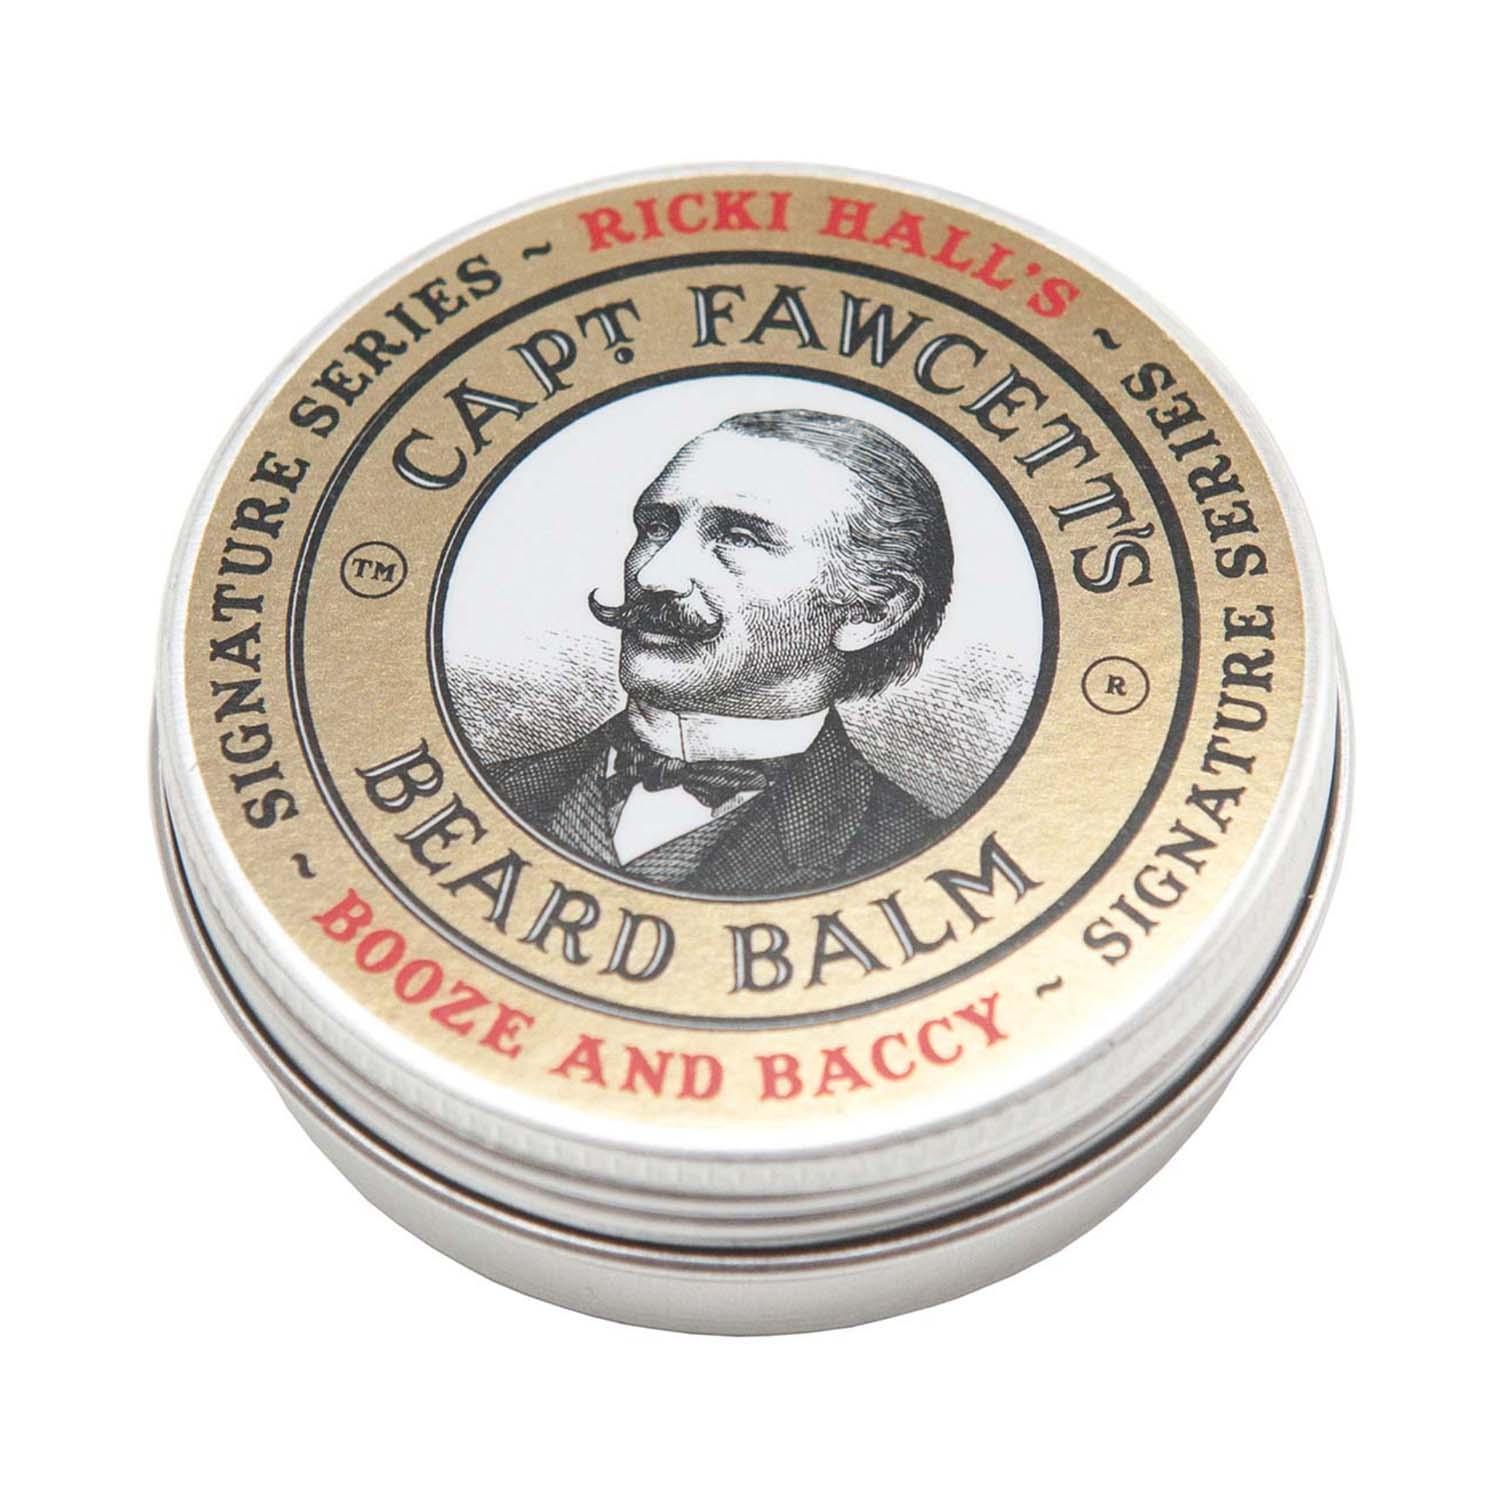 Captain Fawcett Ricki Hall's Booze & Baccy Beard Balm (60 ml)